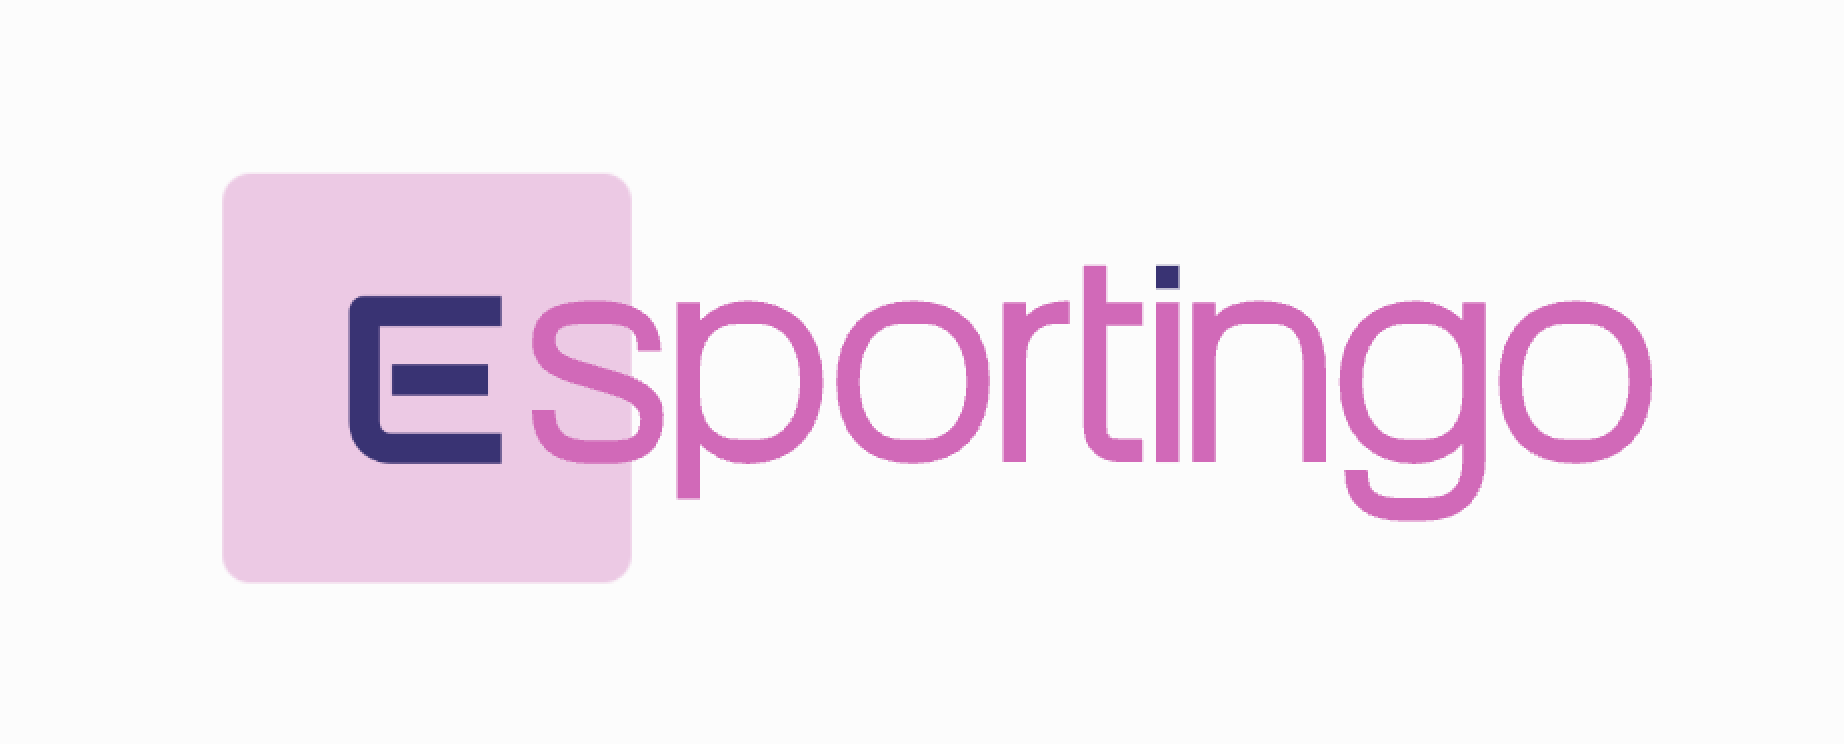 Esportingo.com